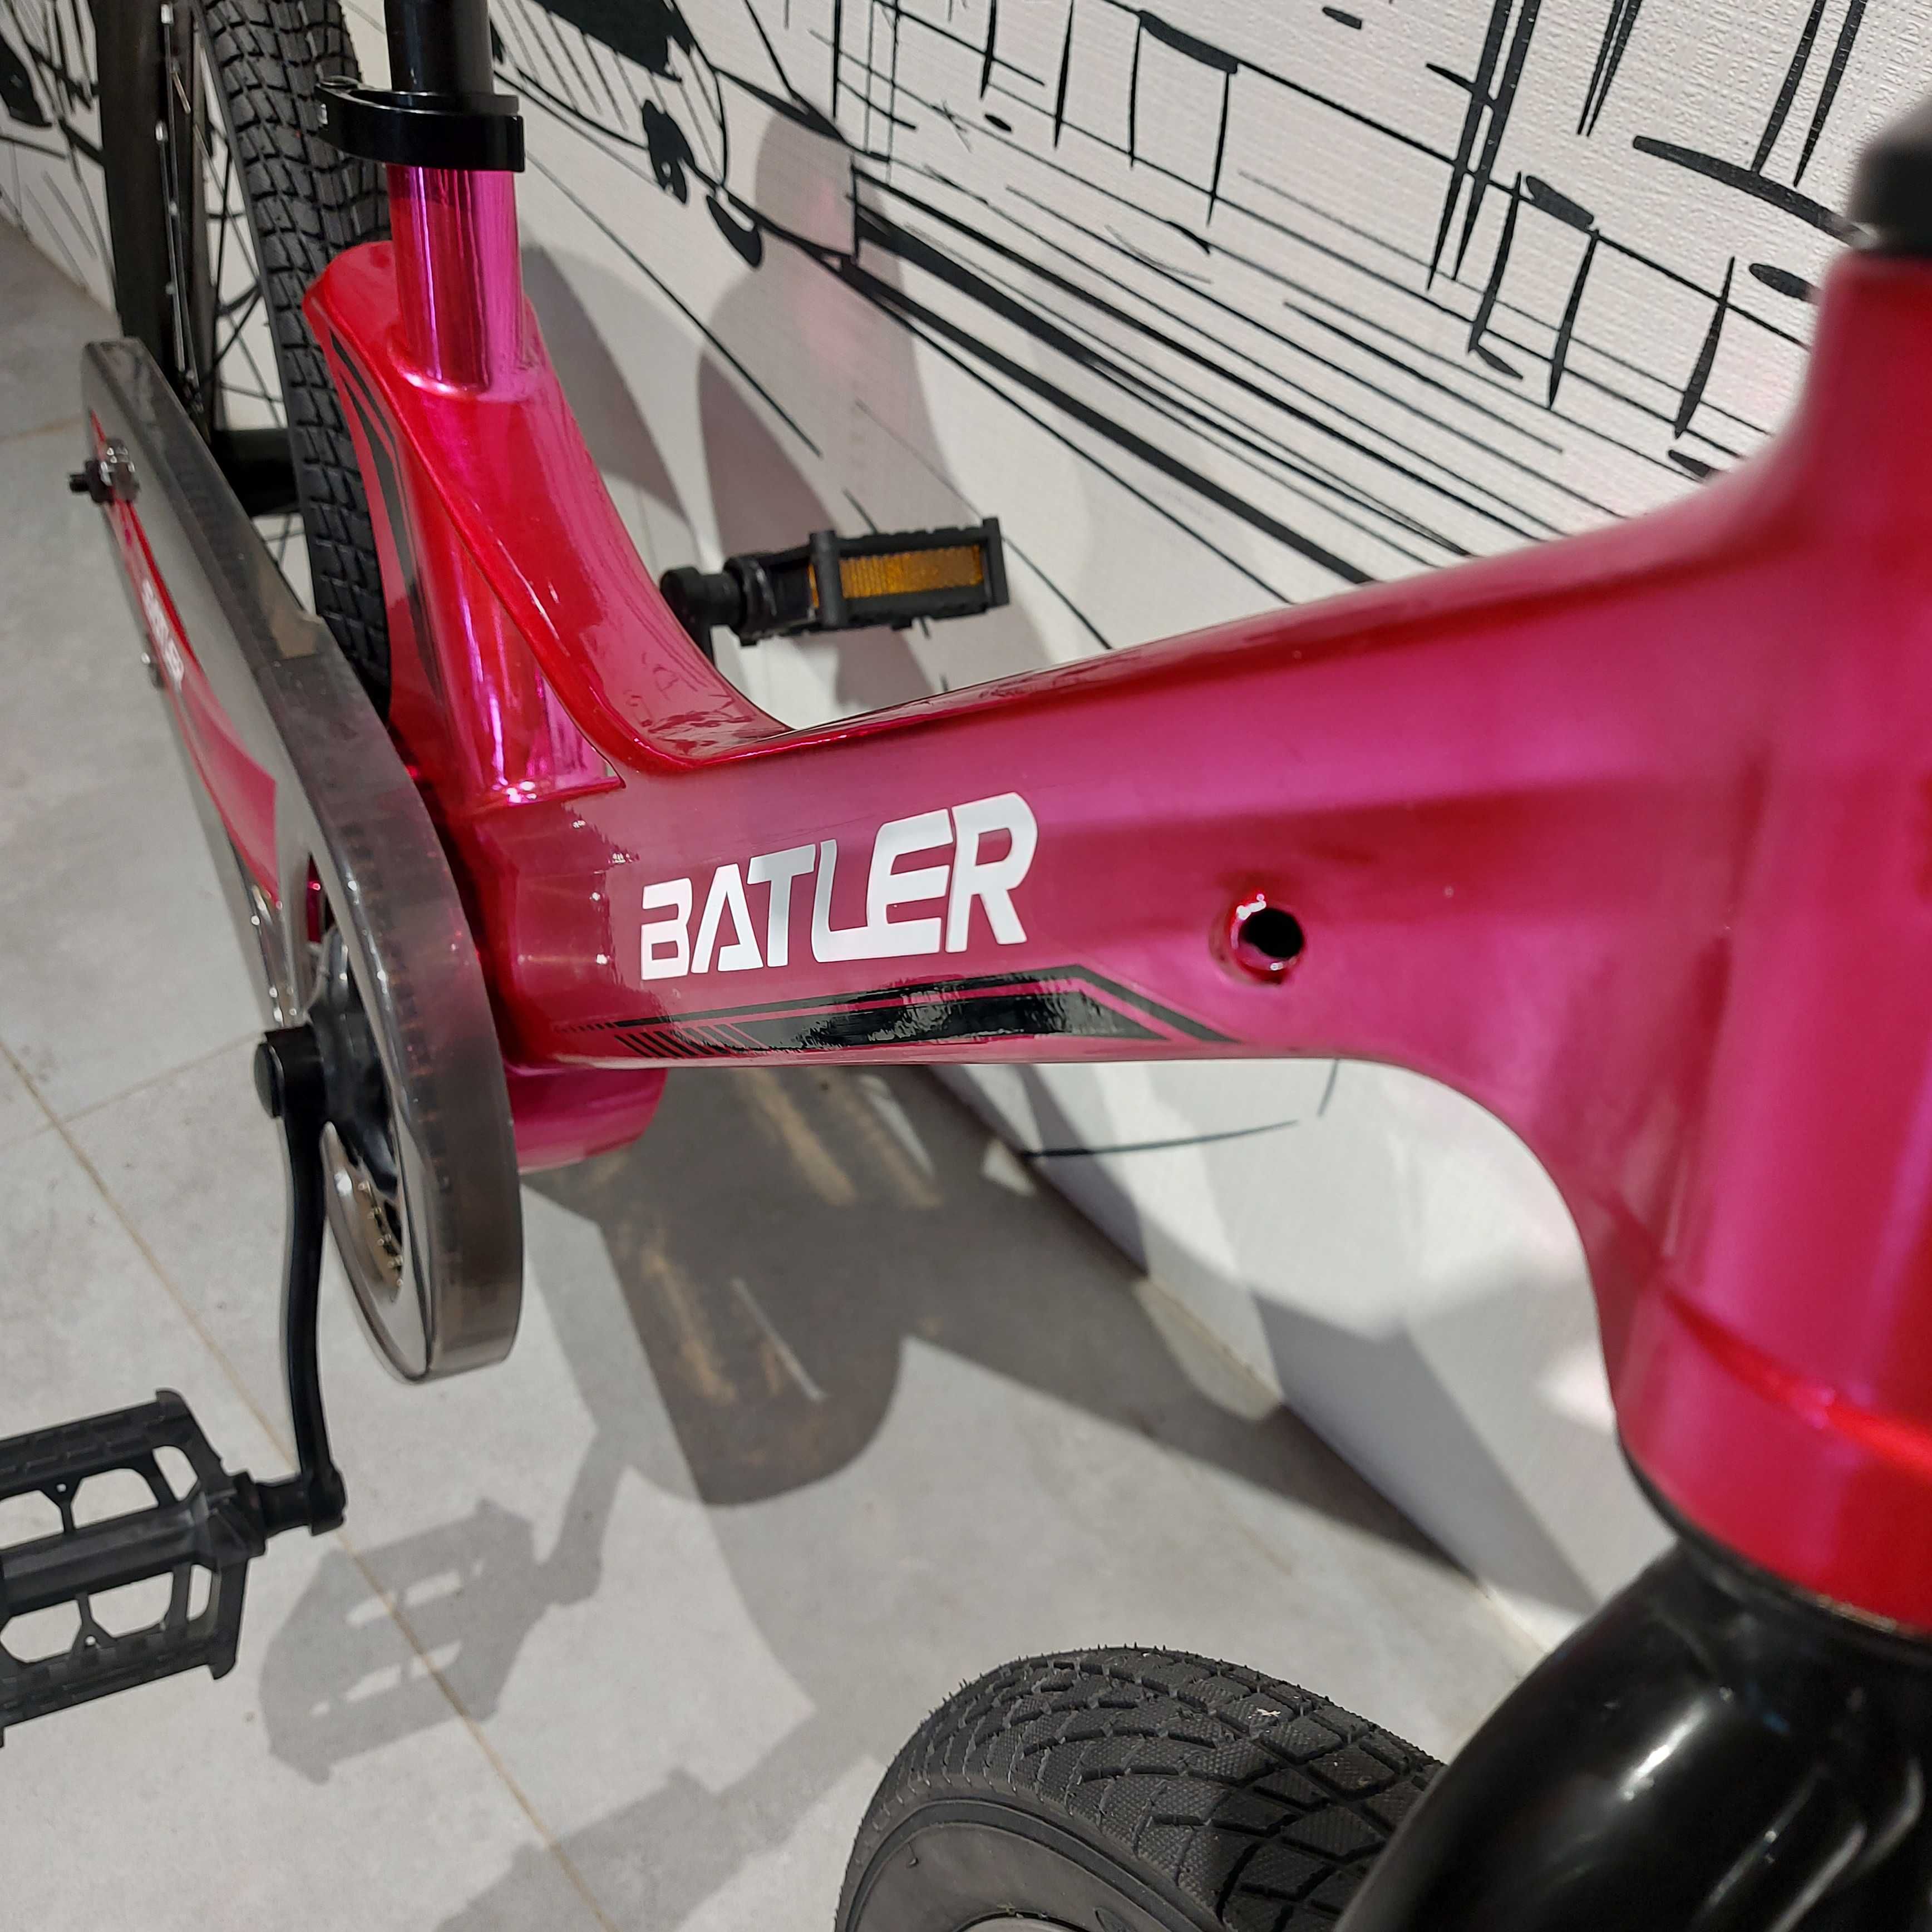 Детский двухколесный алюминиевый велосипед "Batler". 20" кол. Легкий